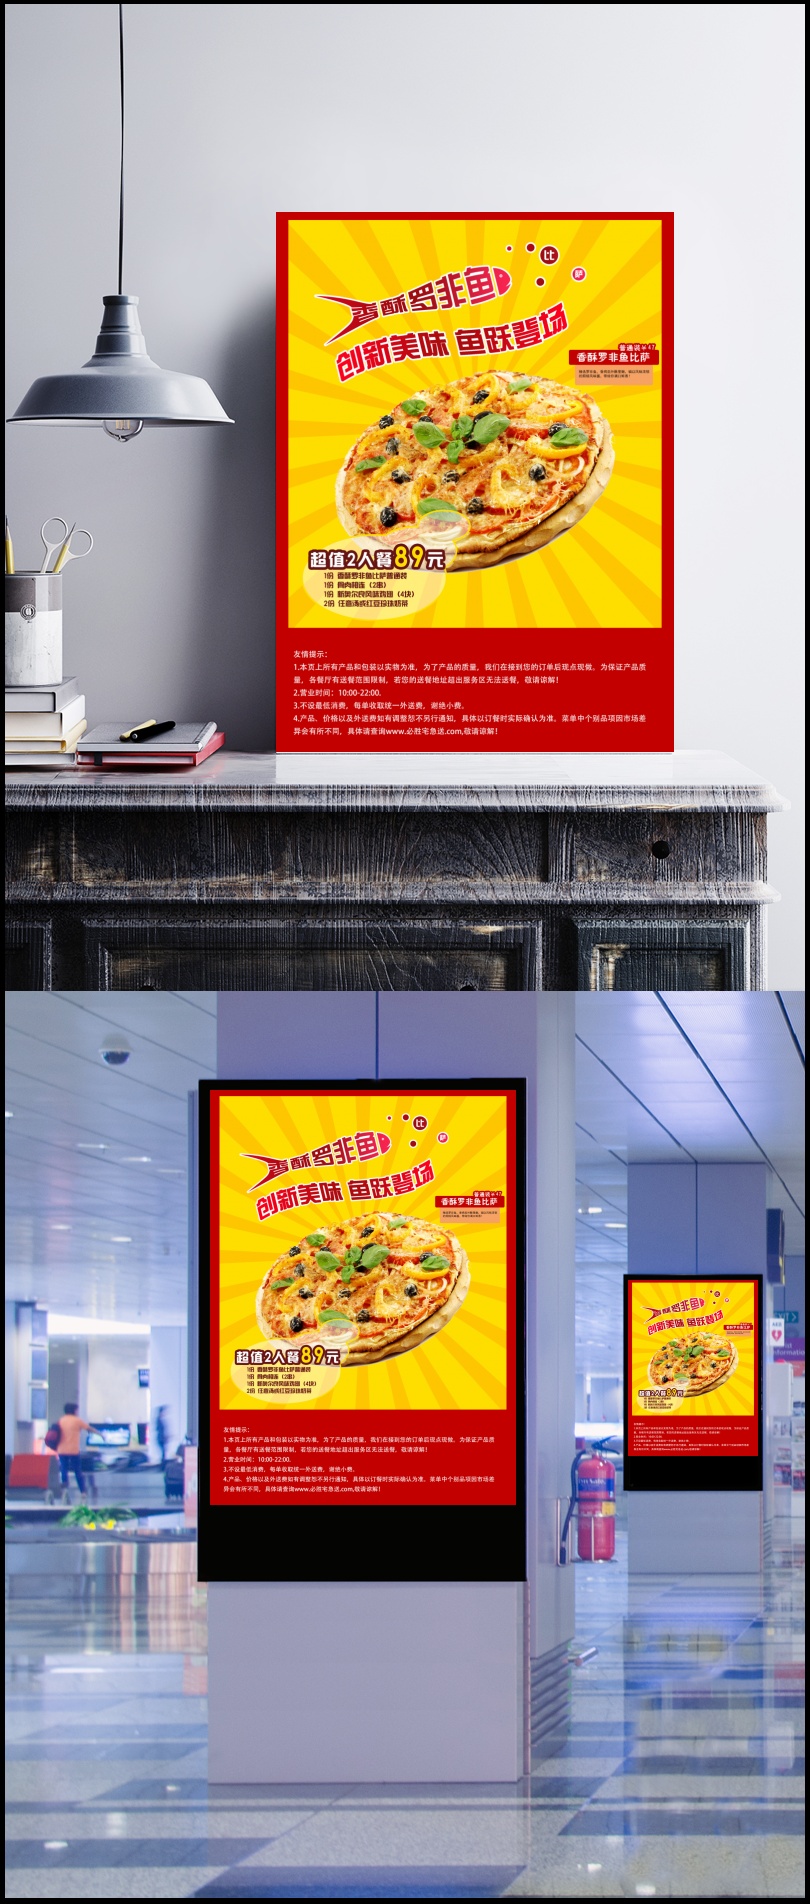 披萨美食宣传海报